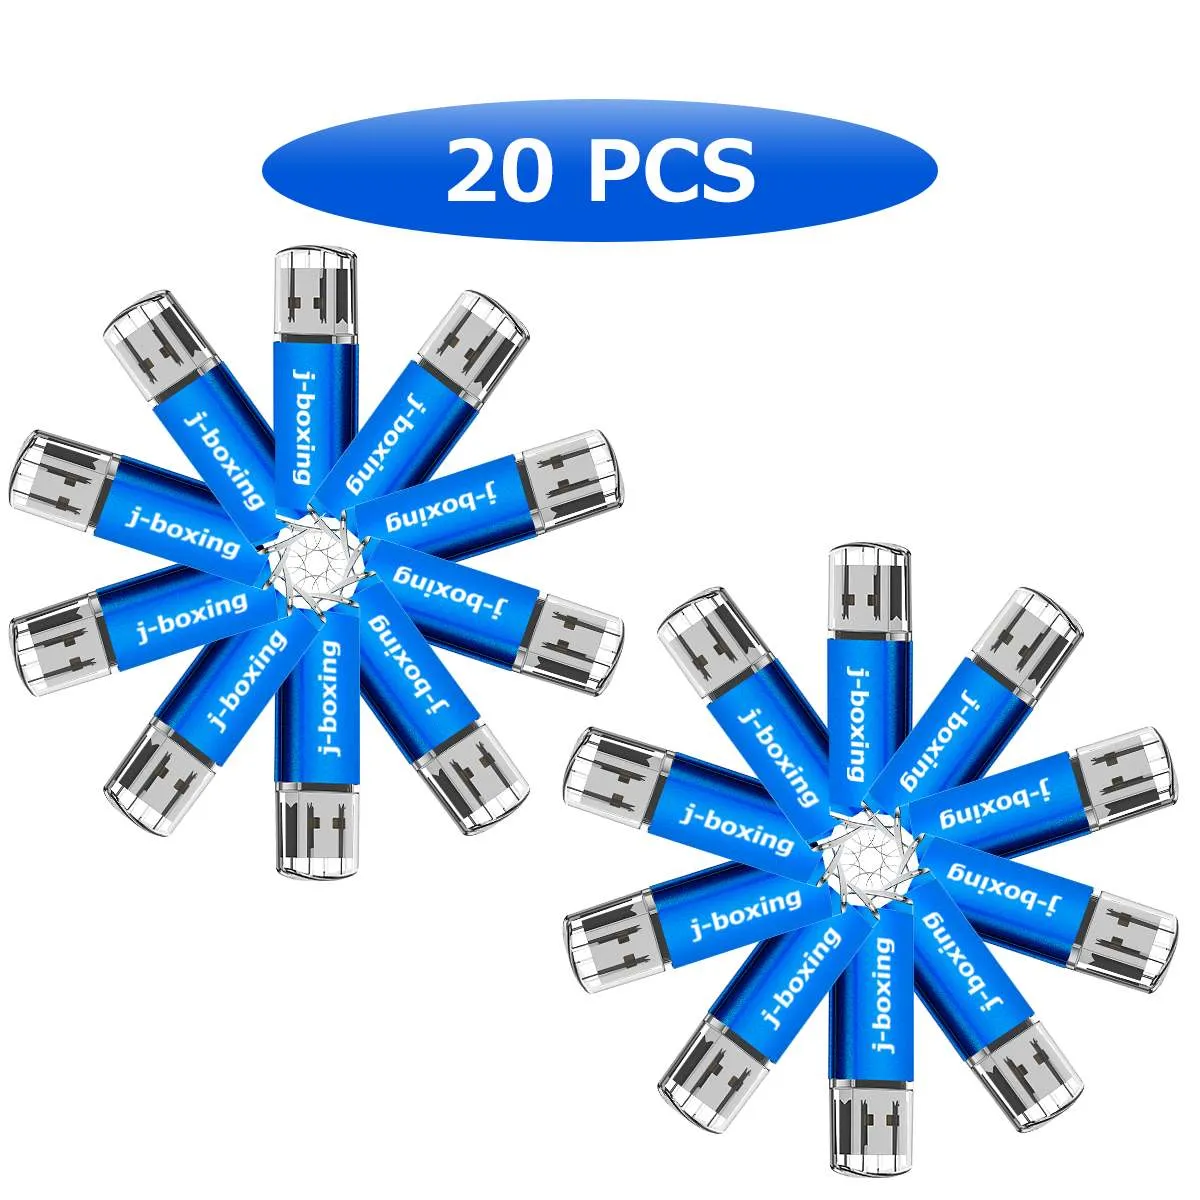 الأزرق السائبة 20PCS 512MB USB فلاش حملة فلاش حملة القلم مستطيل السامي سرعة الإبهام ذاكرة تخزين للقرص كمبيوتر محمول ماك بوك